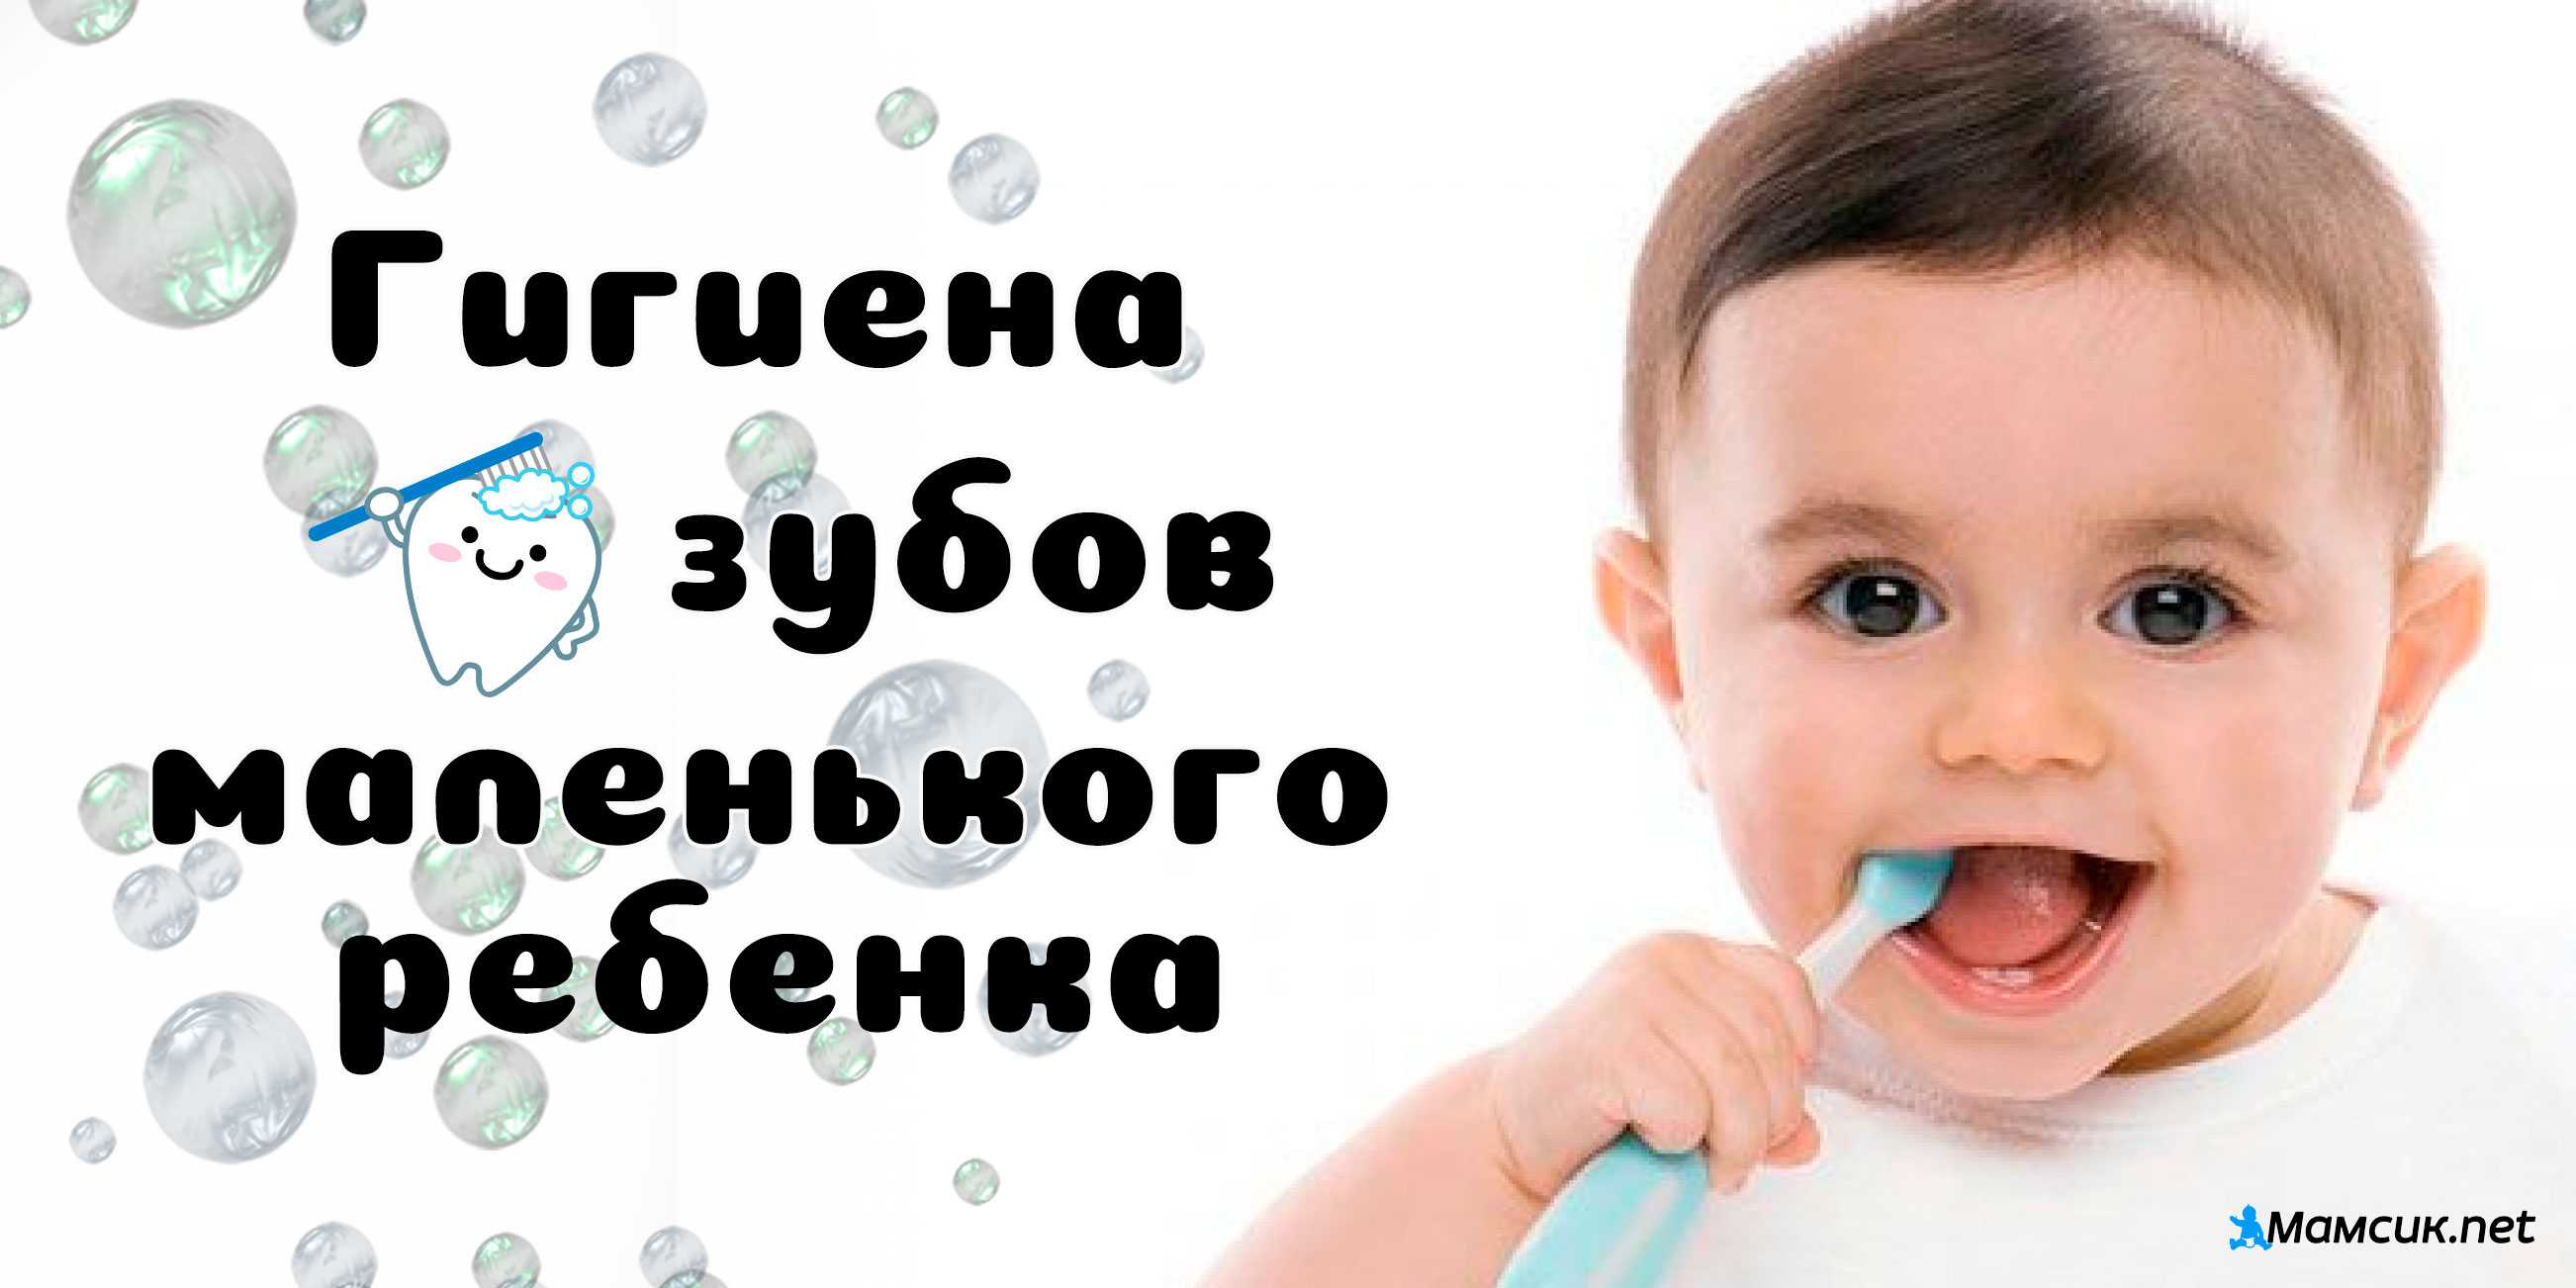 Как правильно учить ребенка чистить зубы: оригинальные методики